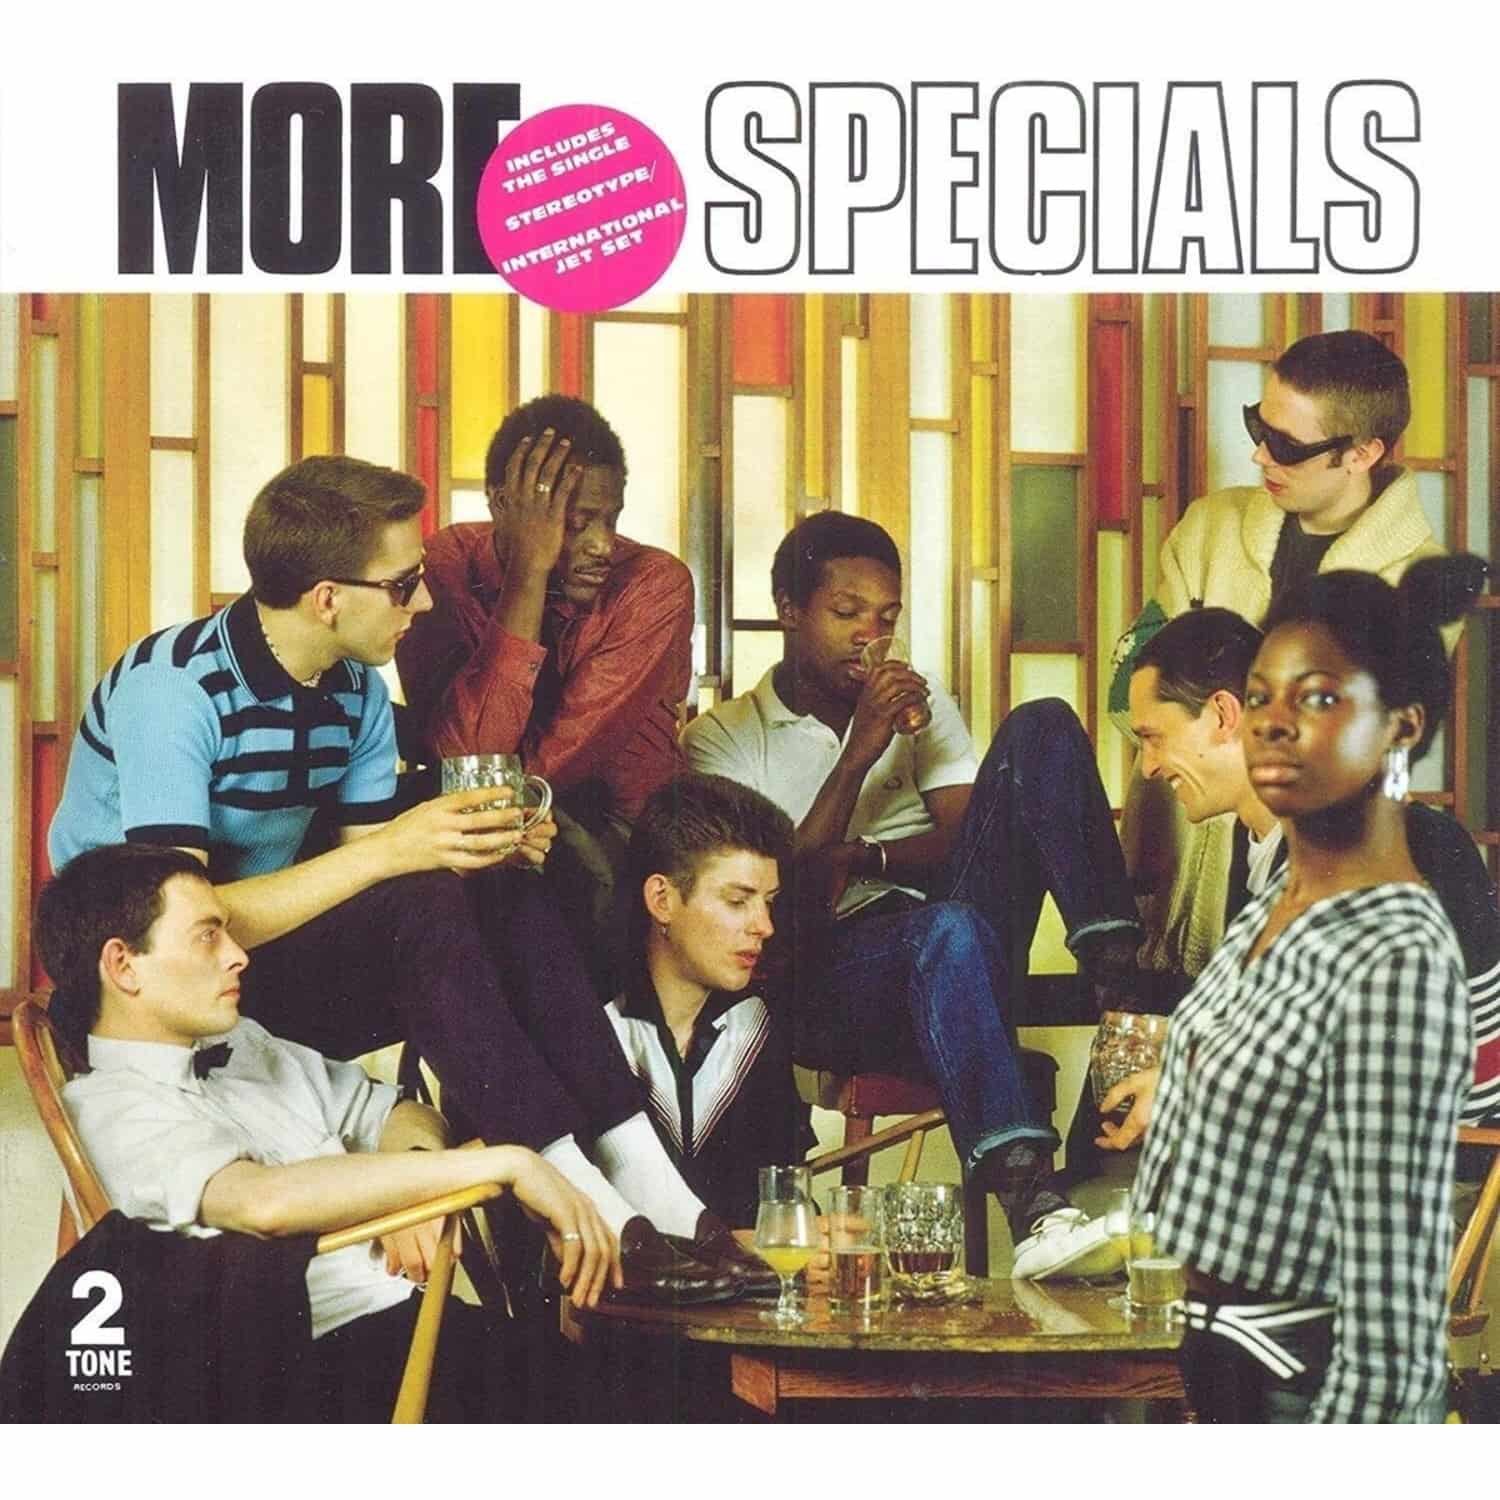 Specials - MORE SPECIALS 